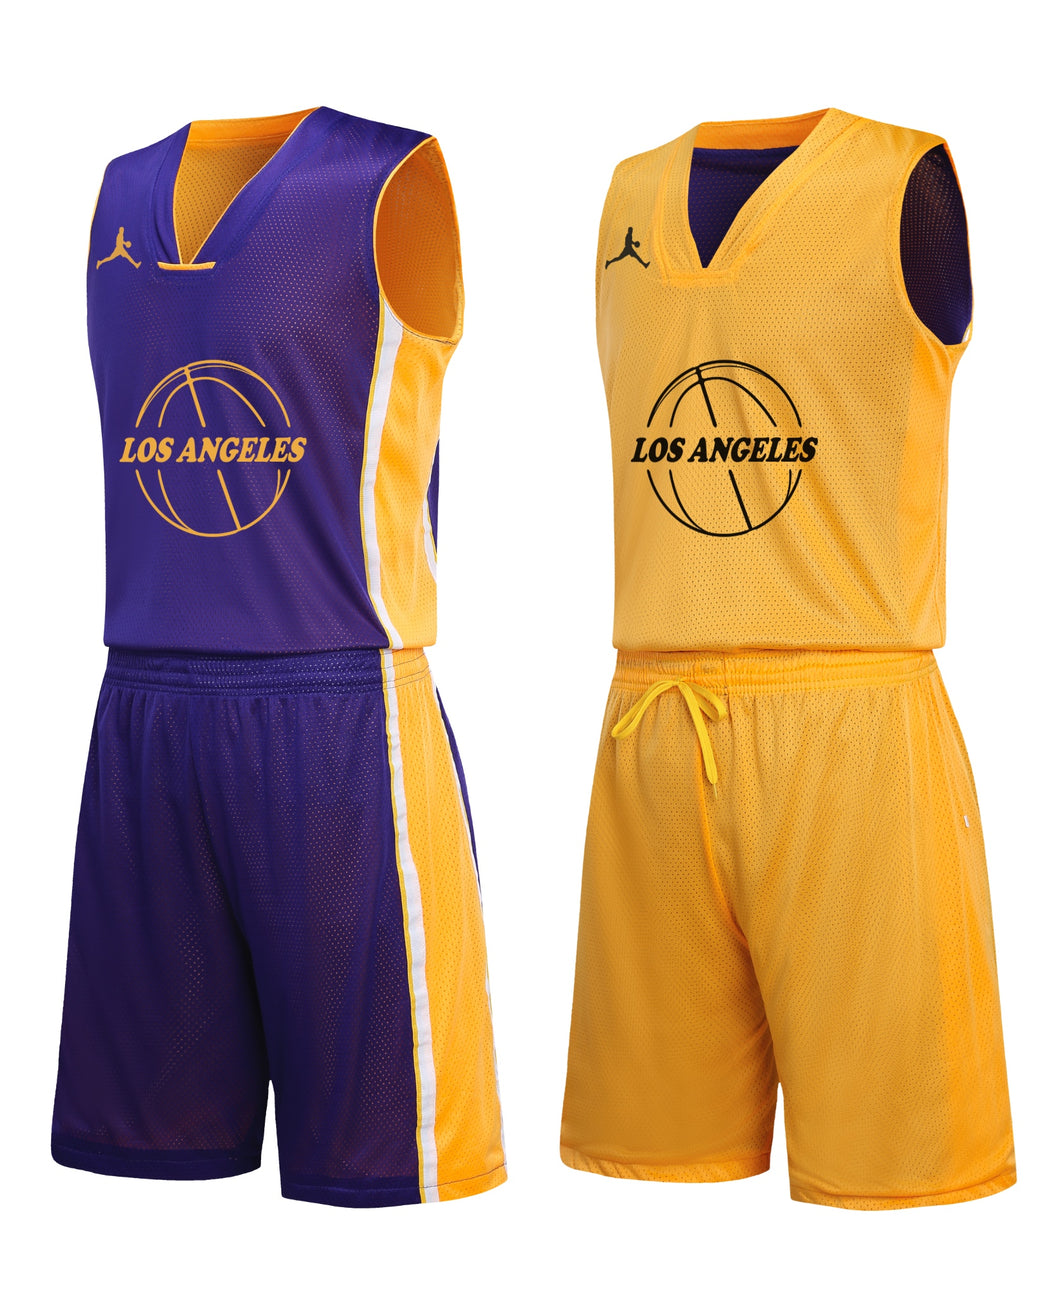 Los Angeles réversible tenue de basket-ball